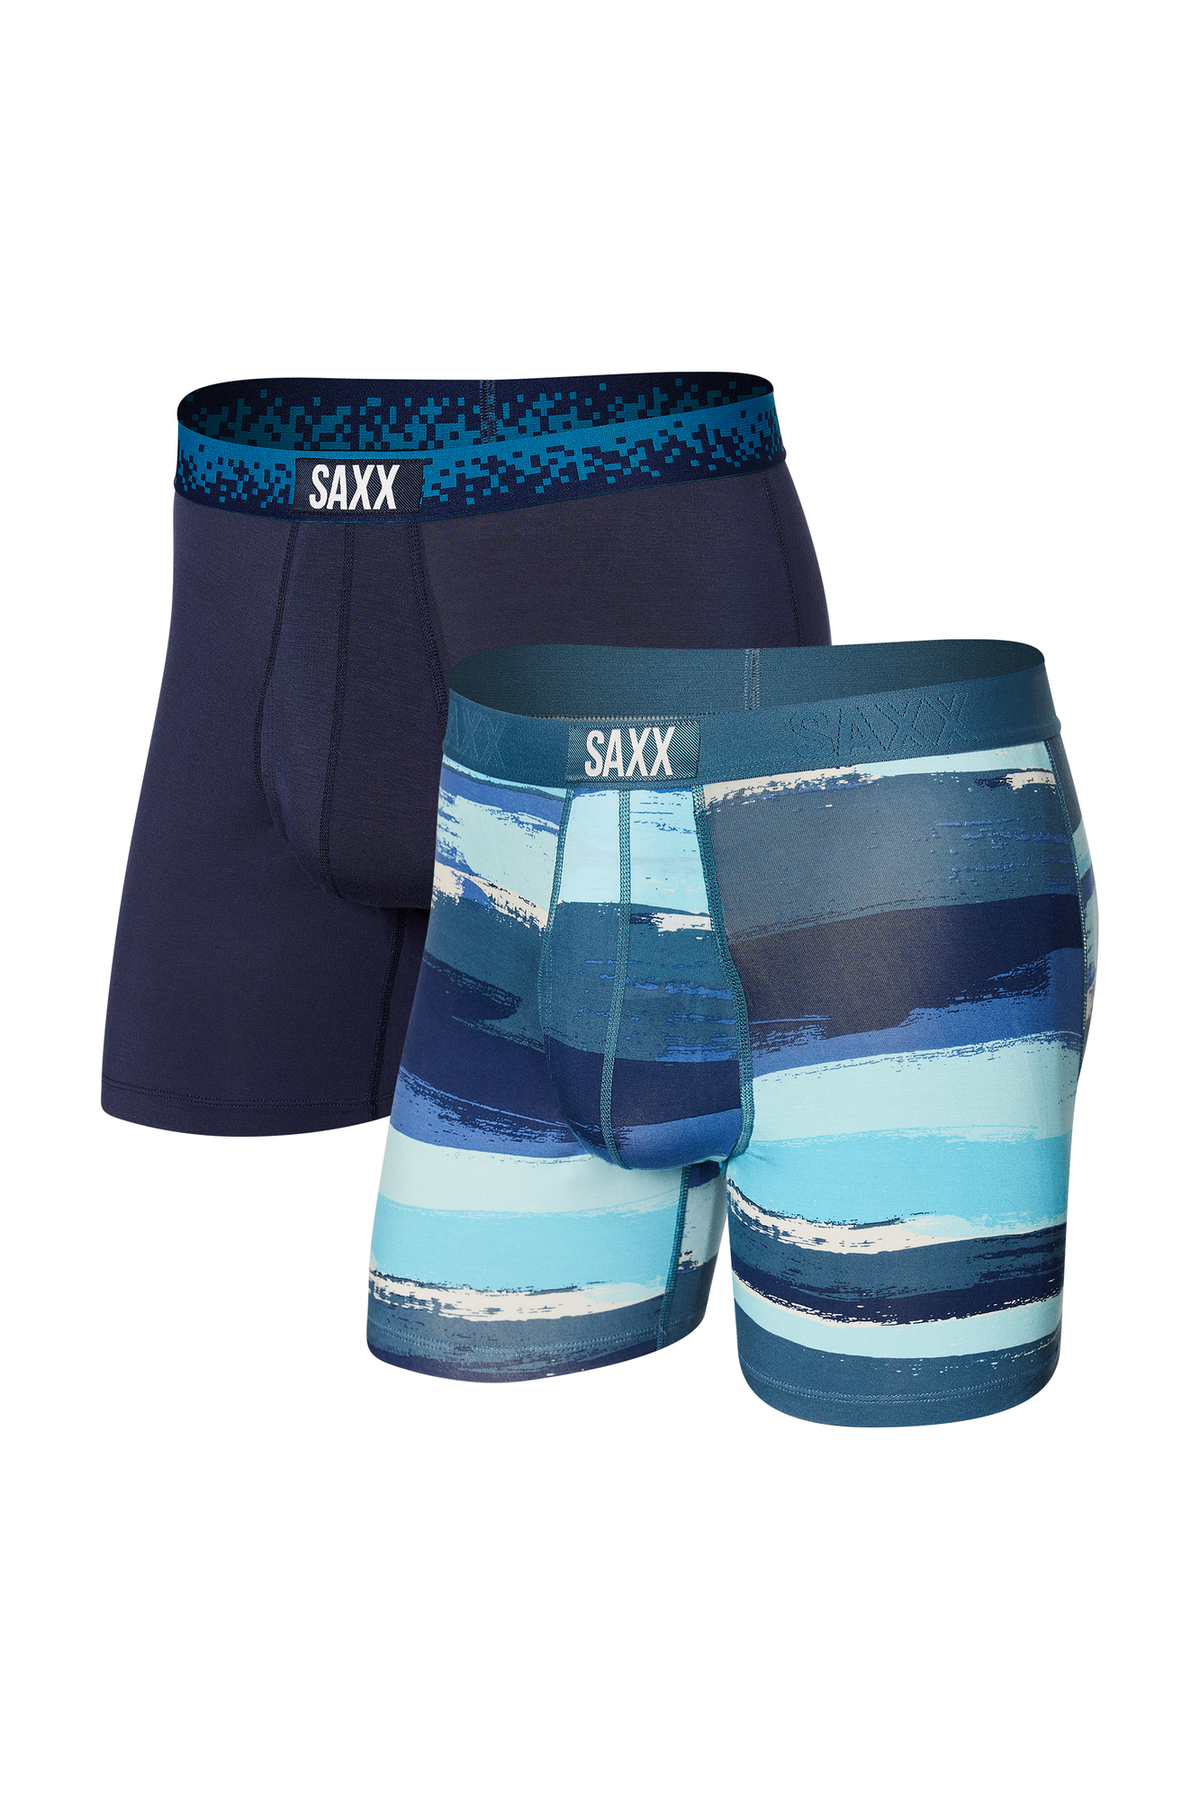  SAXX Underwear Co. Men's Underwear - ULTRA Super Soft